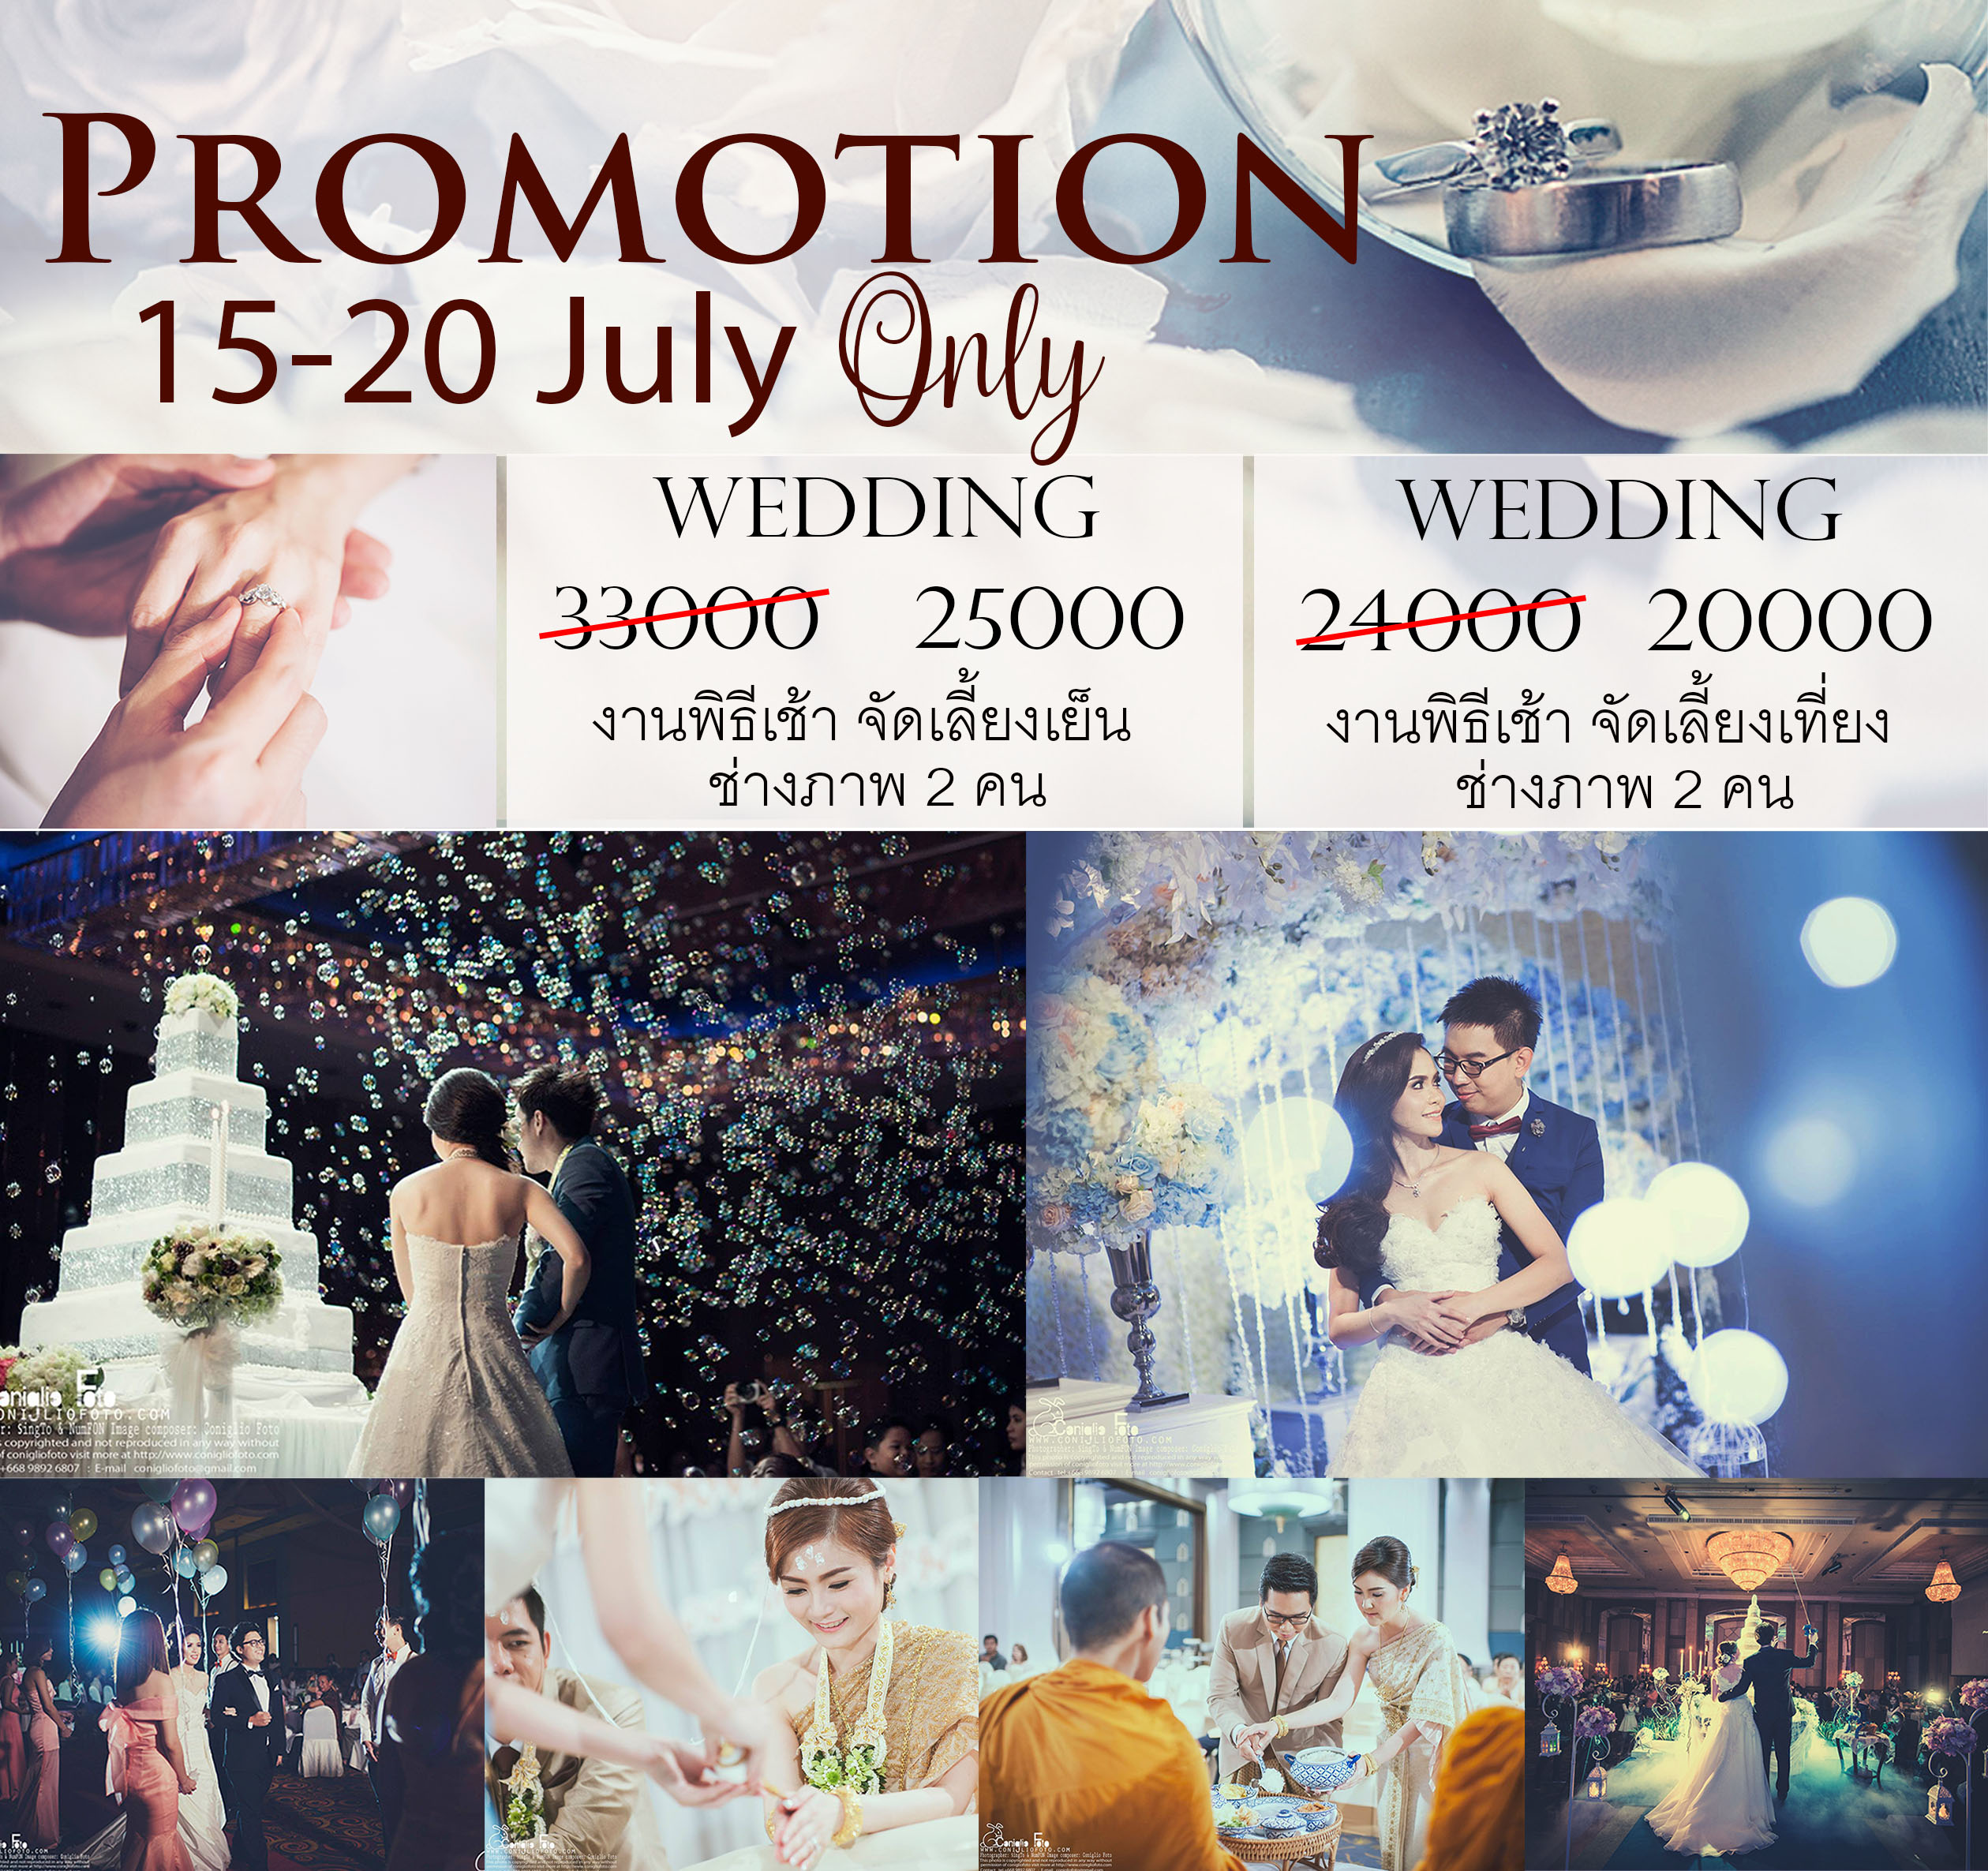 photographer promotion wedding